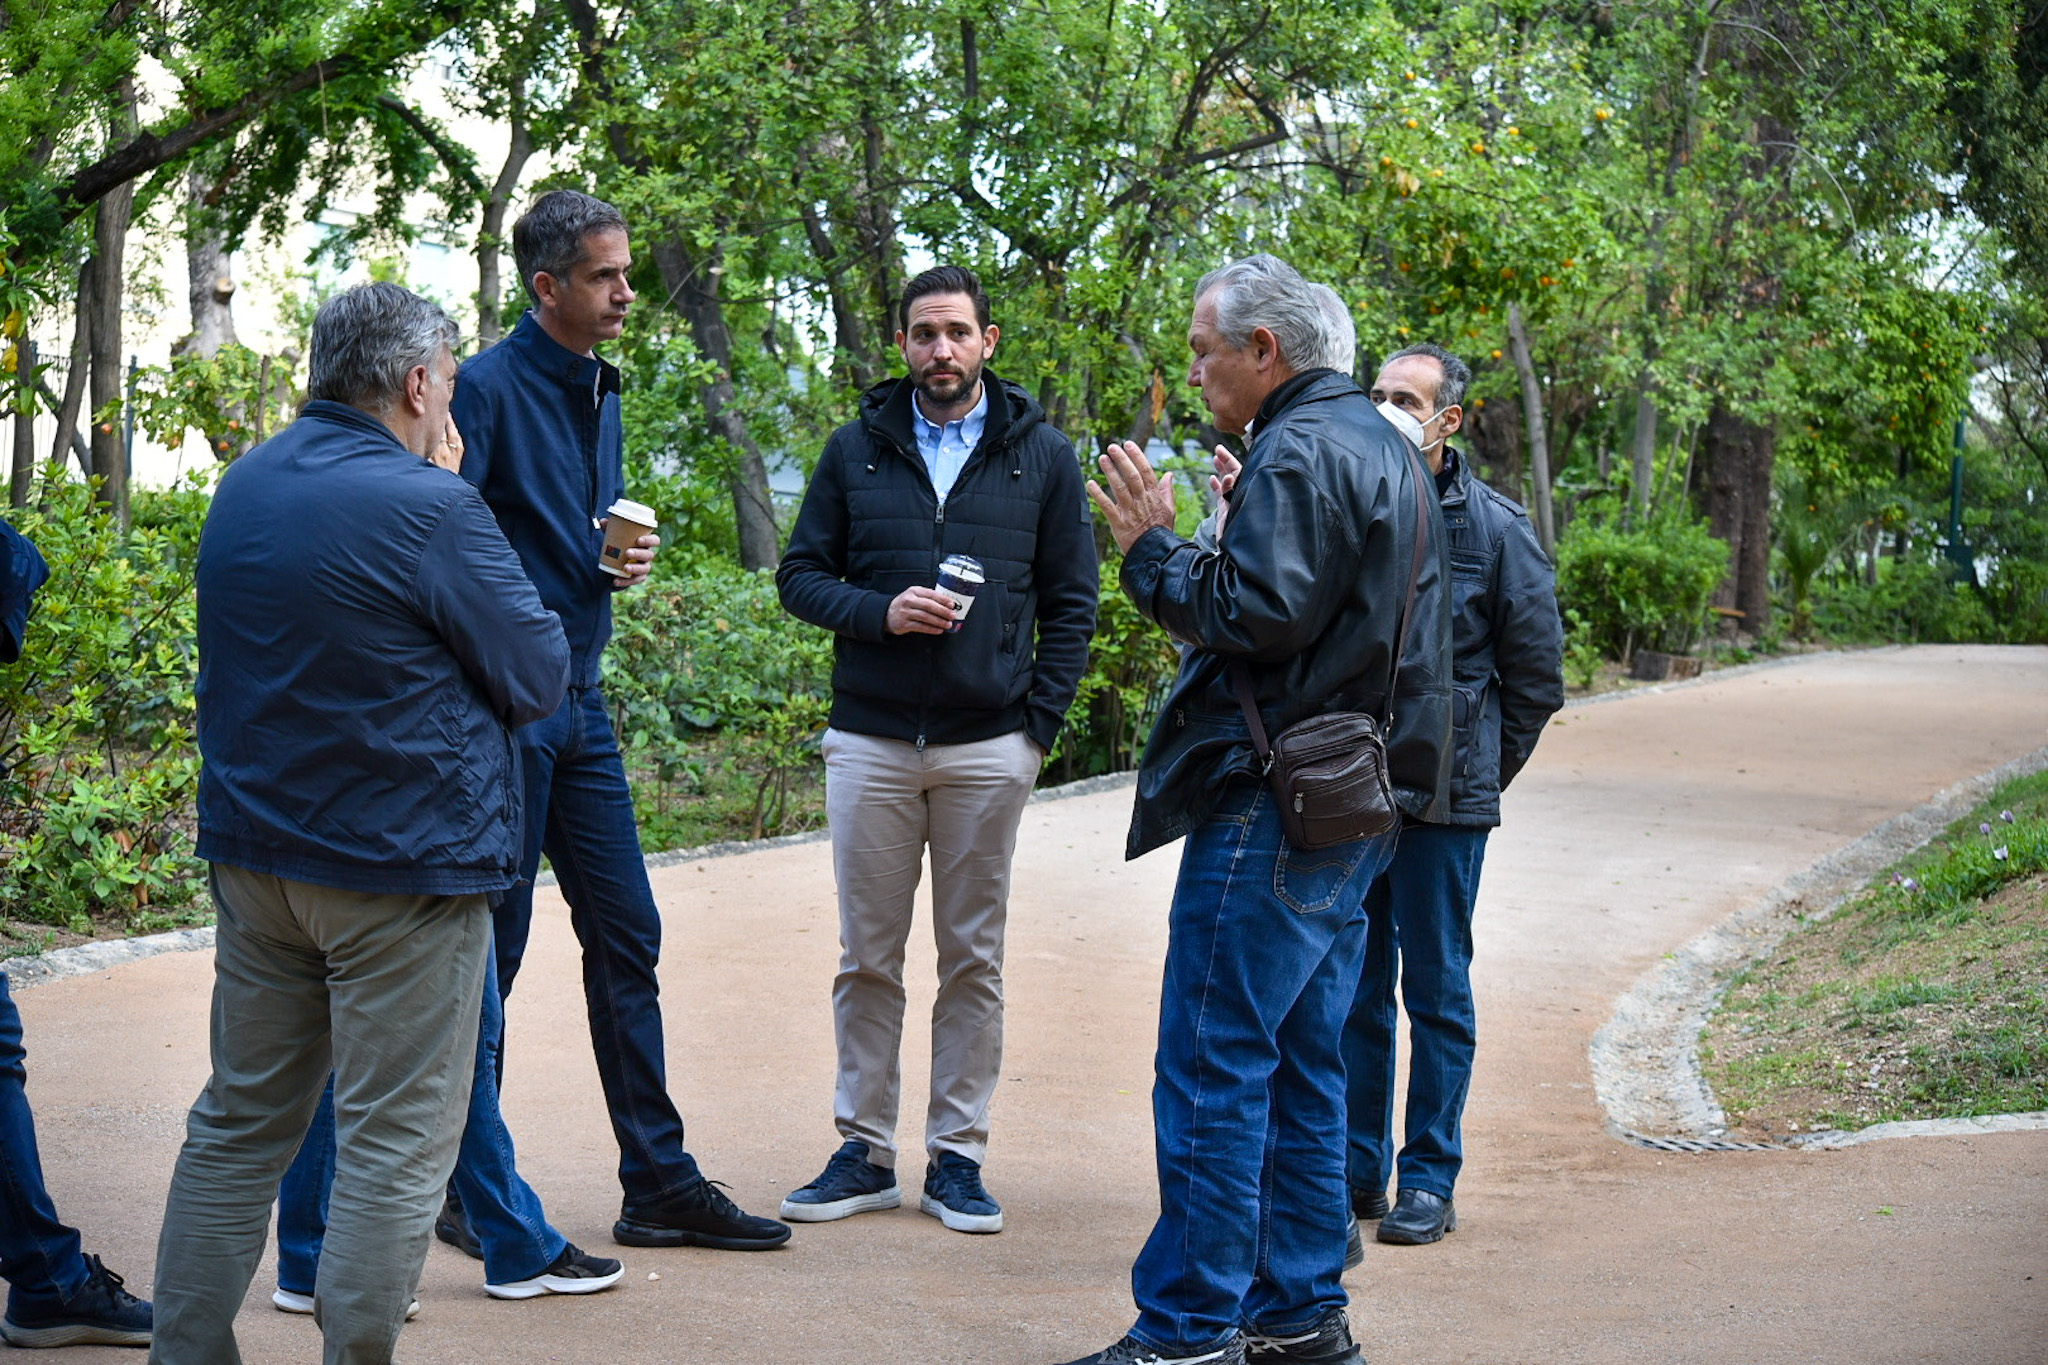 Εθνικός Κήπος: Ο δήμαρχος Αθηναίων, Κώστας Μπακογιάννης, μαζί με άλλα πρόσωπα κατά τη διάρκεια επίσκεψής του στον κήπο